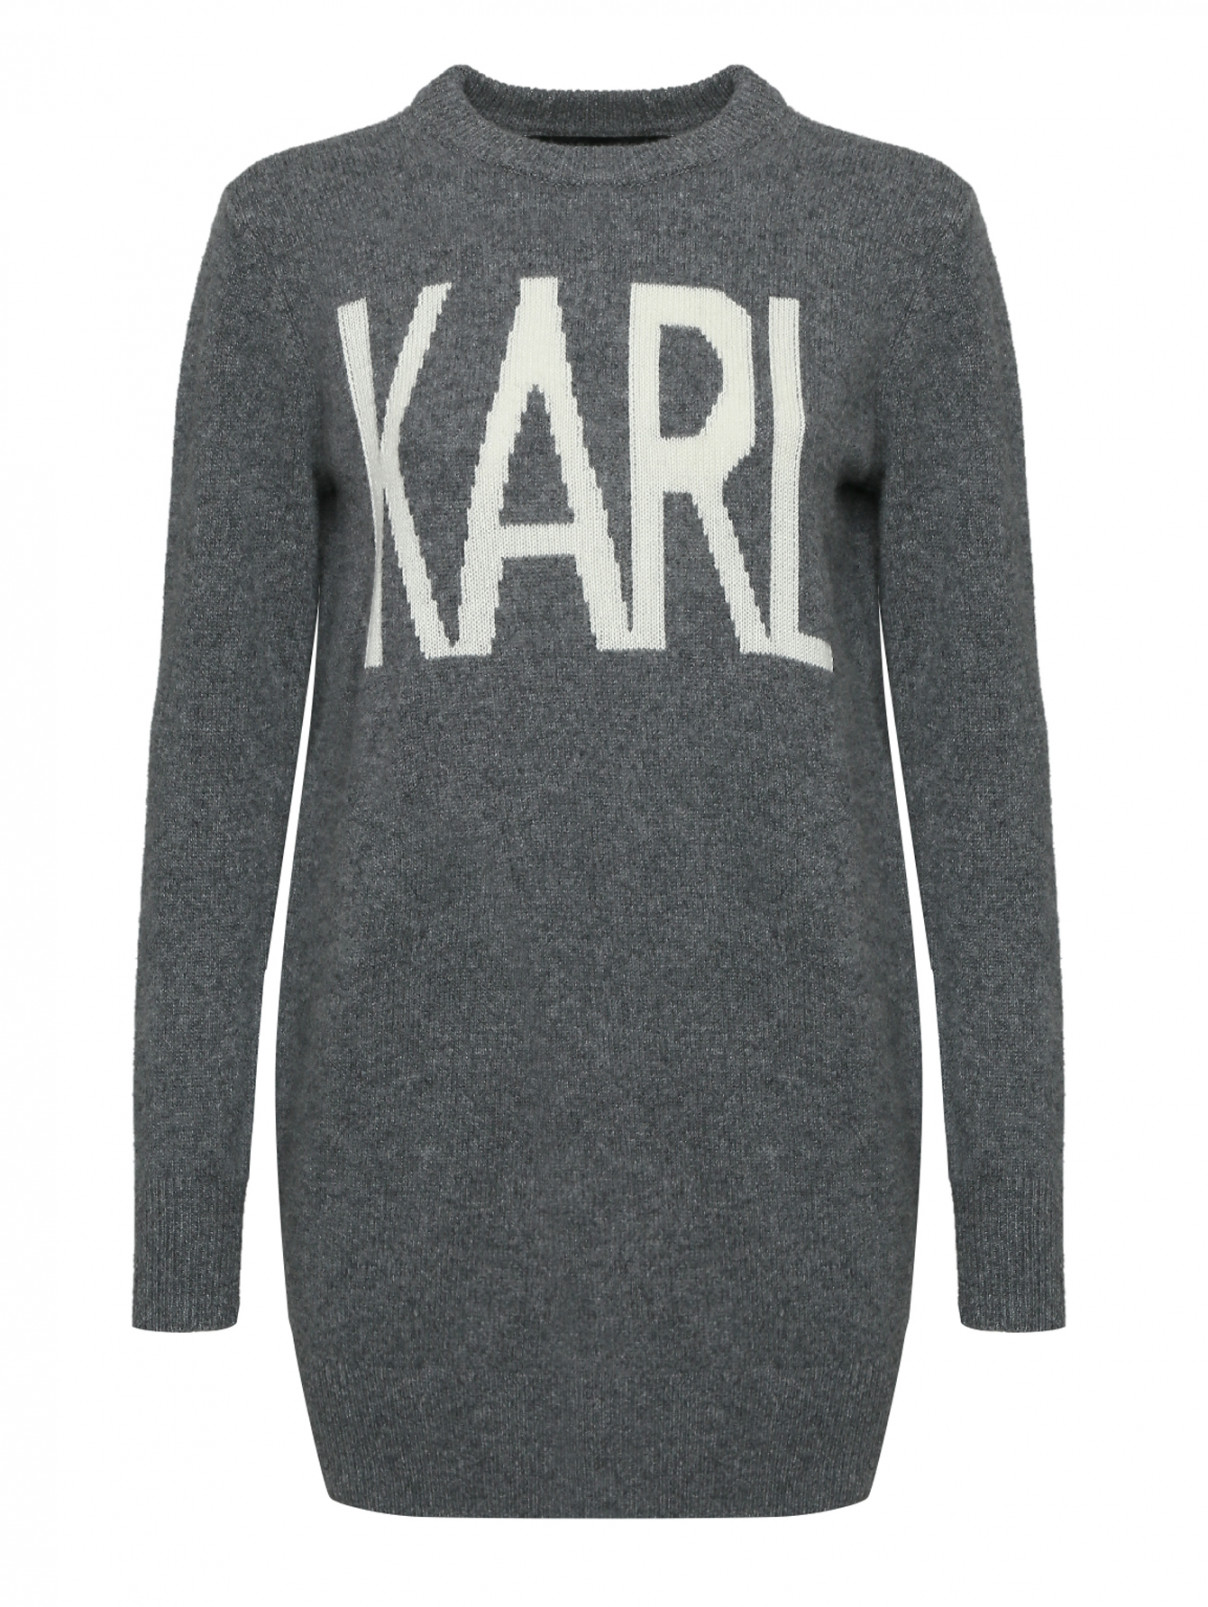 Джемпер из шерсти и кашемира с принтом Karl Lagerfeld  –  Общий вид  – Цвет:  Серый